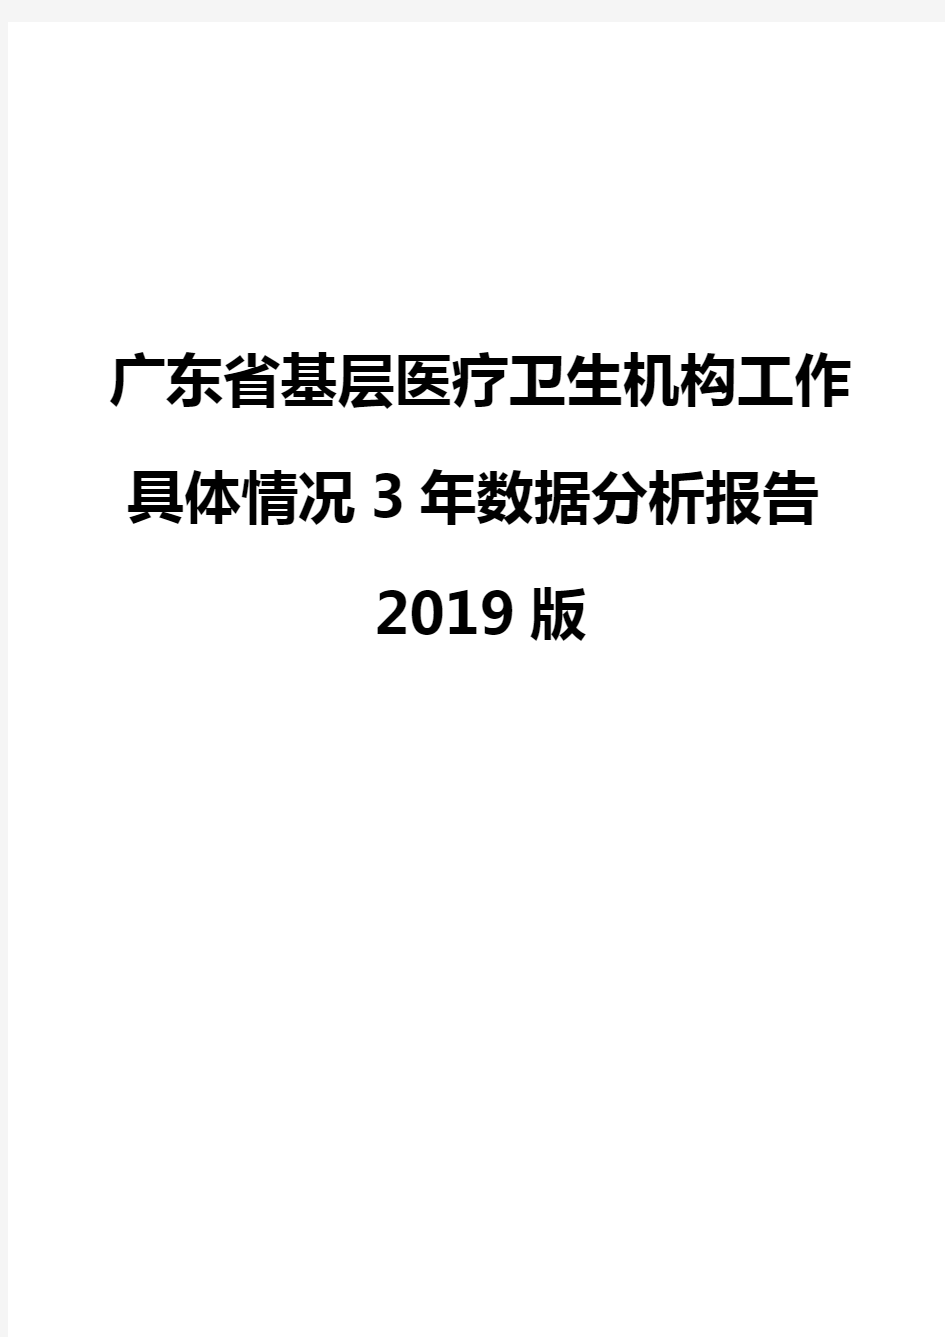 广东省基层医疗卫生机构工作具体情况3年数据分析报告2019版